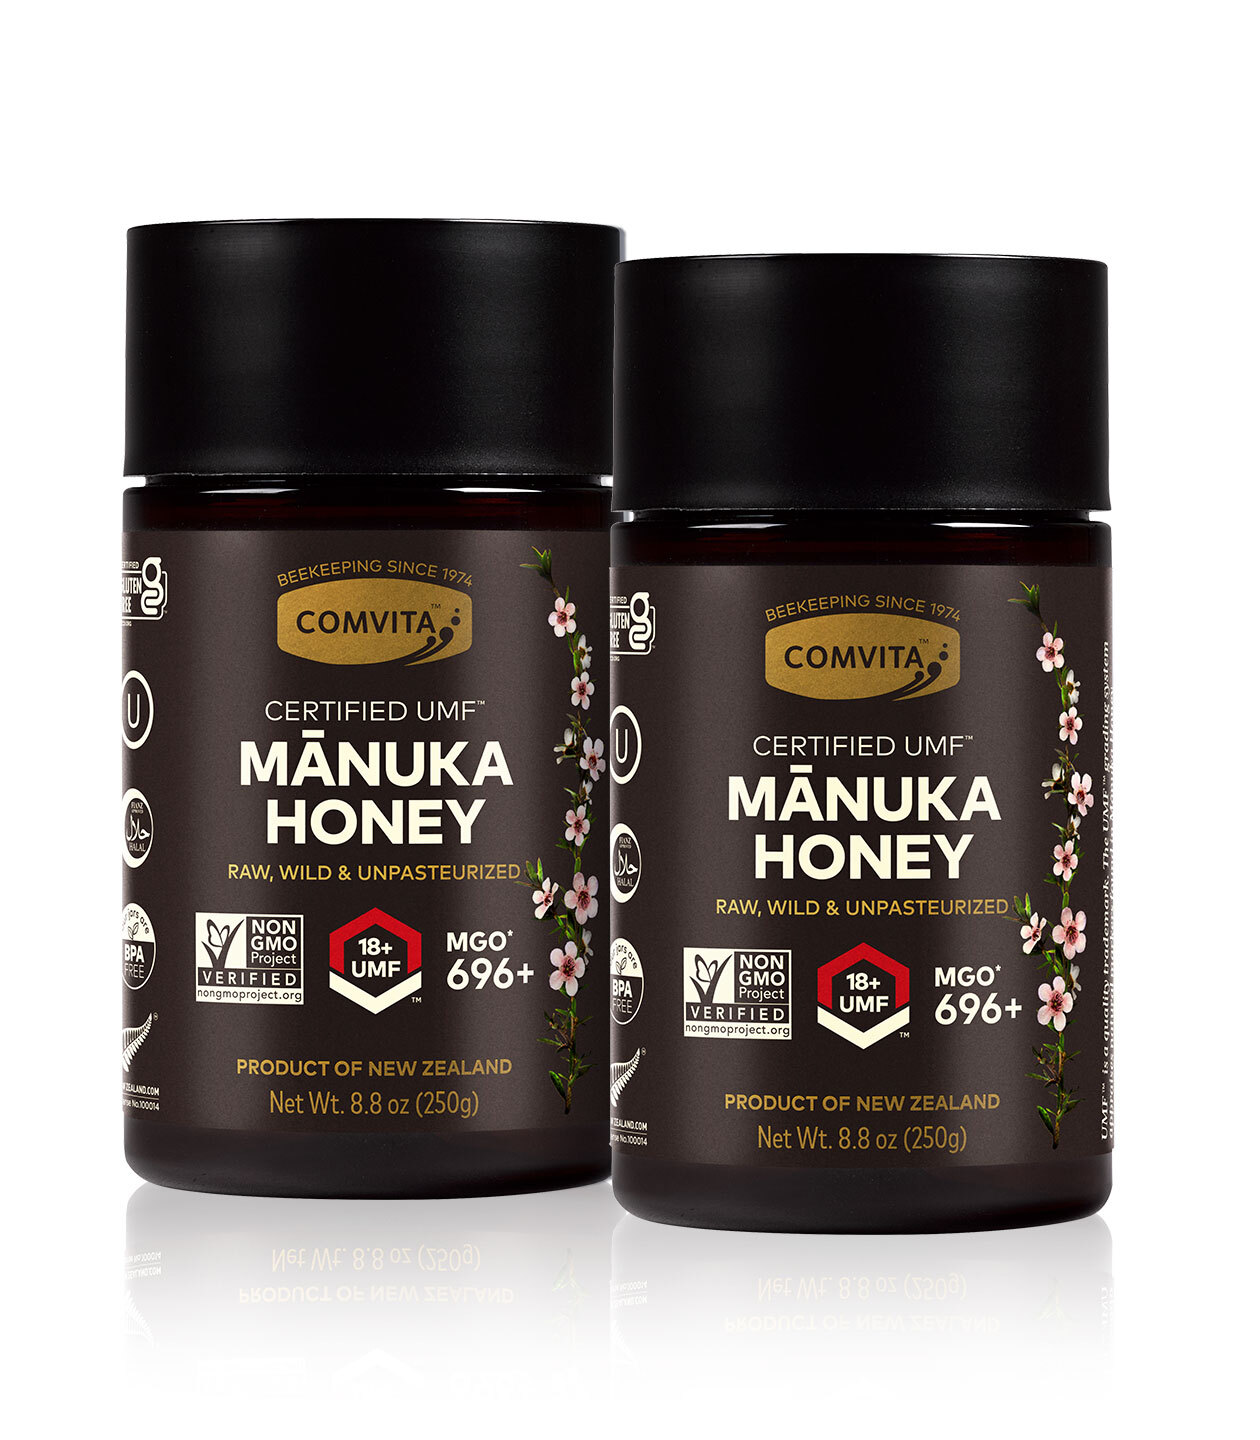 UMF 18+ Manuka Honey Bundle